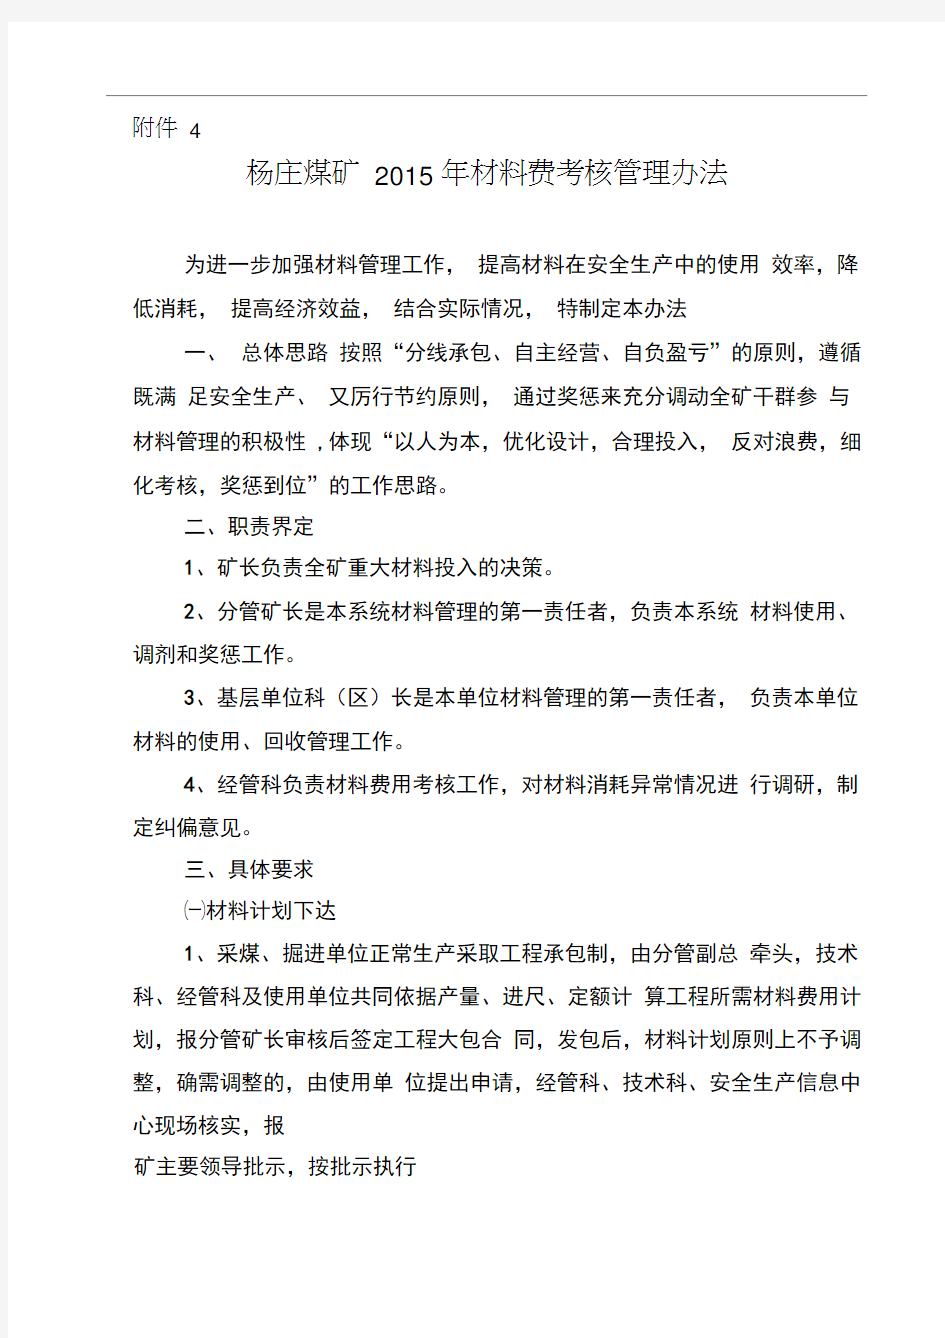 杨庄煤矿2015年材料考核管理办法